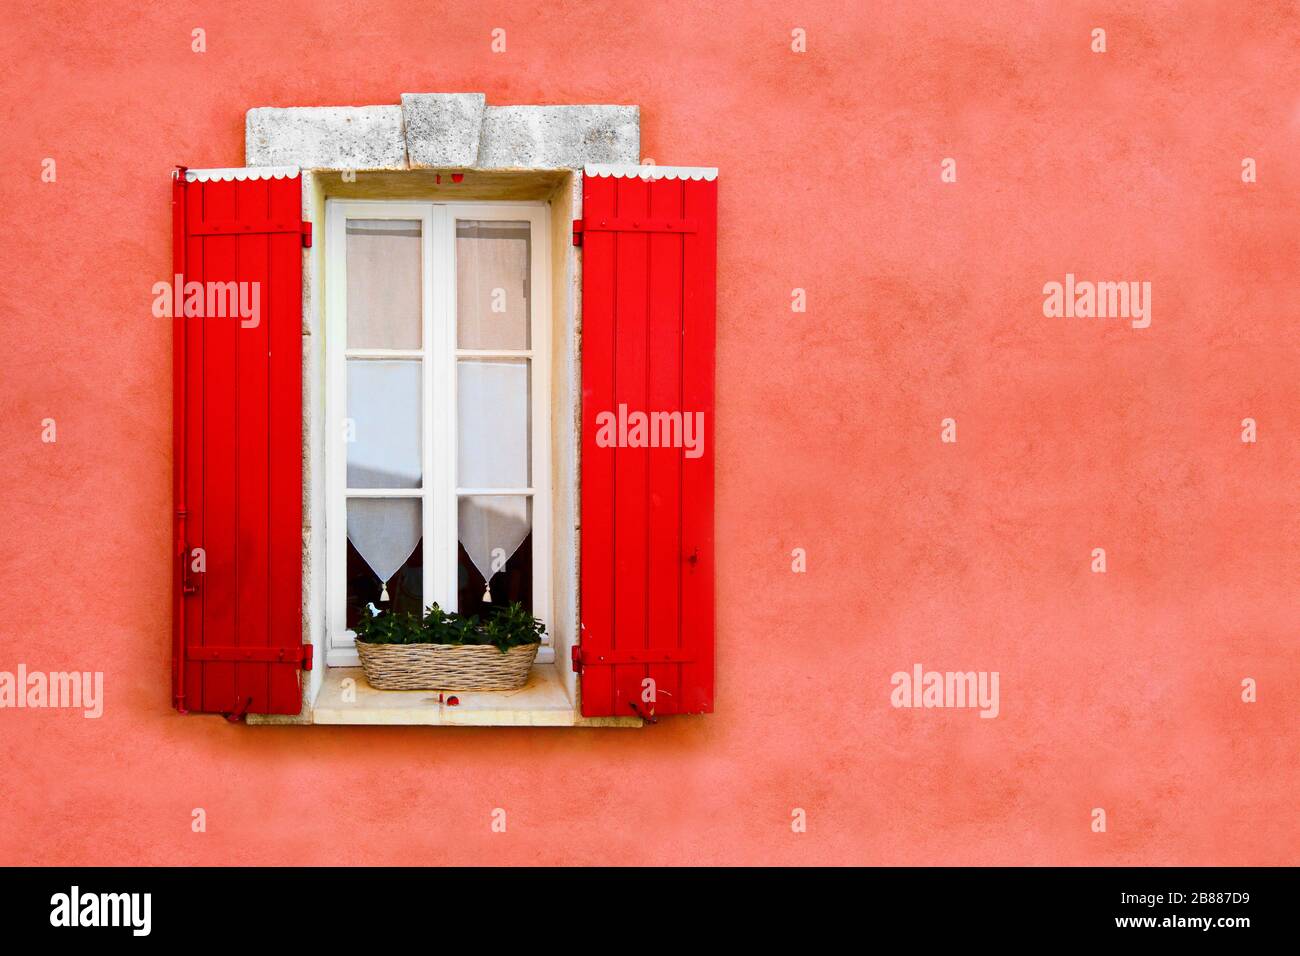 Rotes Fenster mit Blenden gegen die rot ockerfarbene Wand Stockfoto